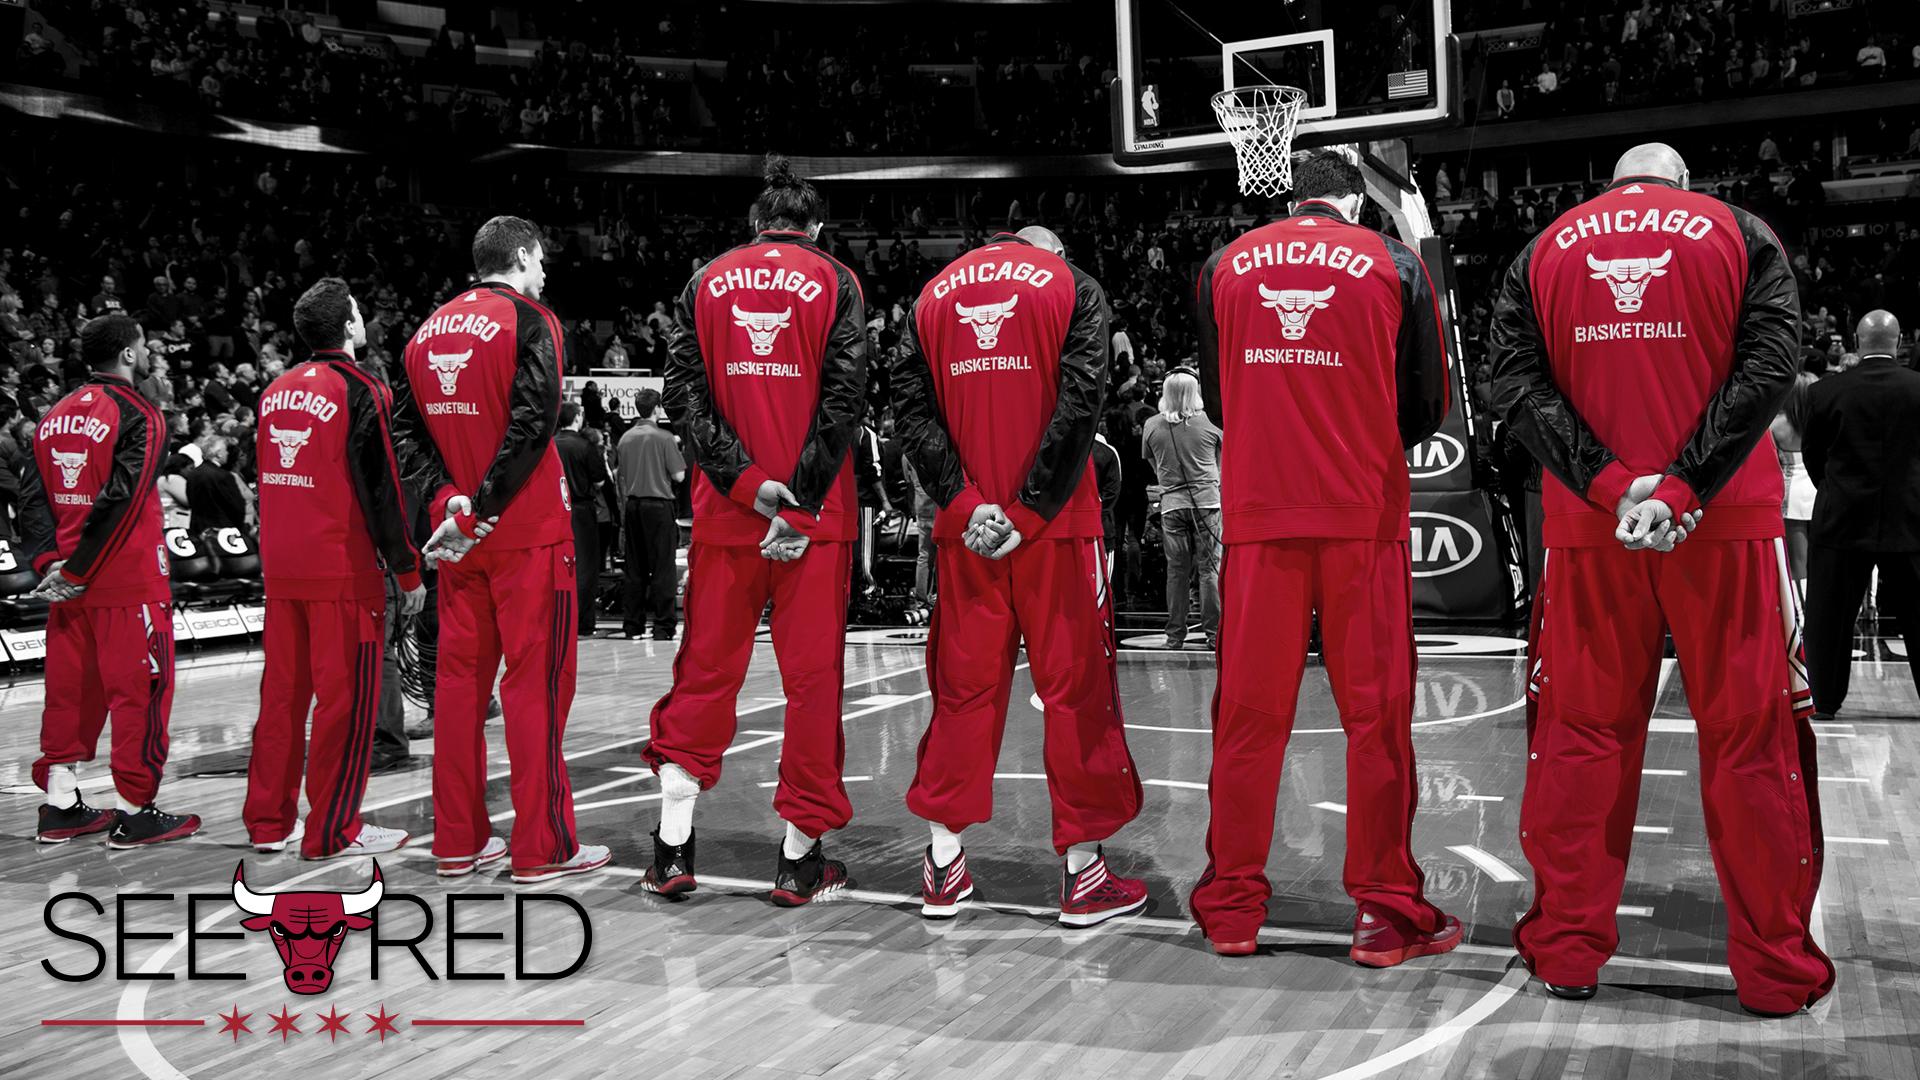 Chicago Bulls Hd , HD Wallpaper & Backgrounds